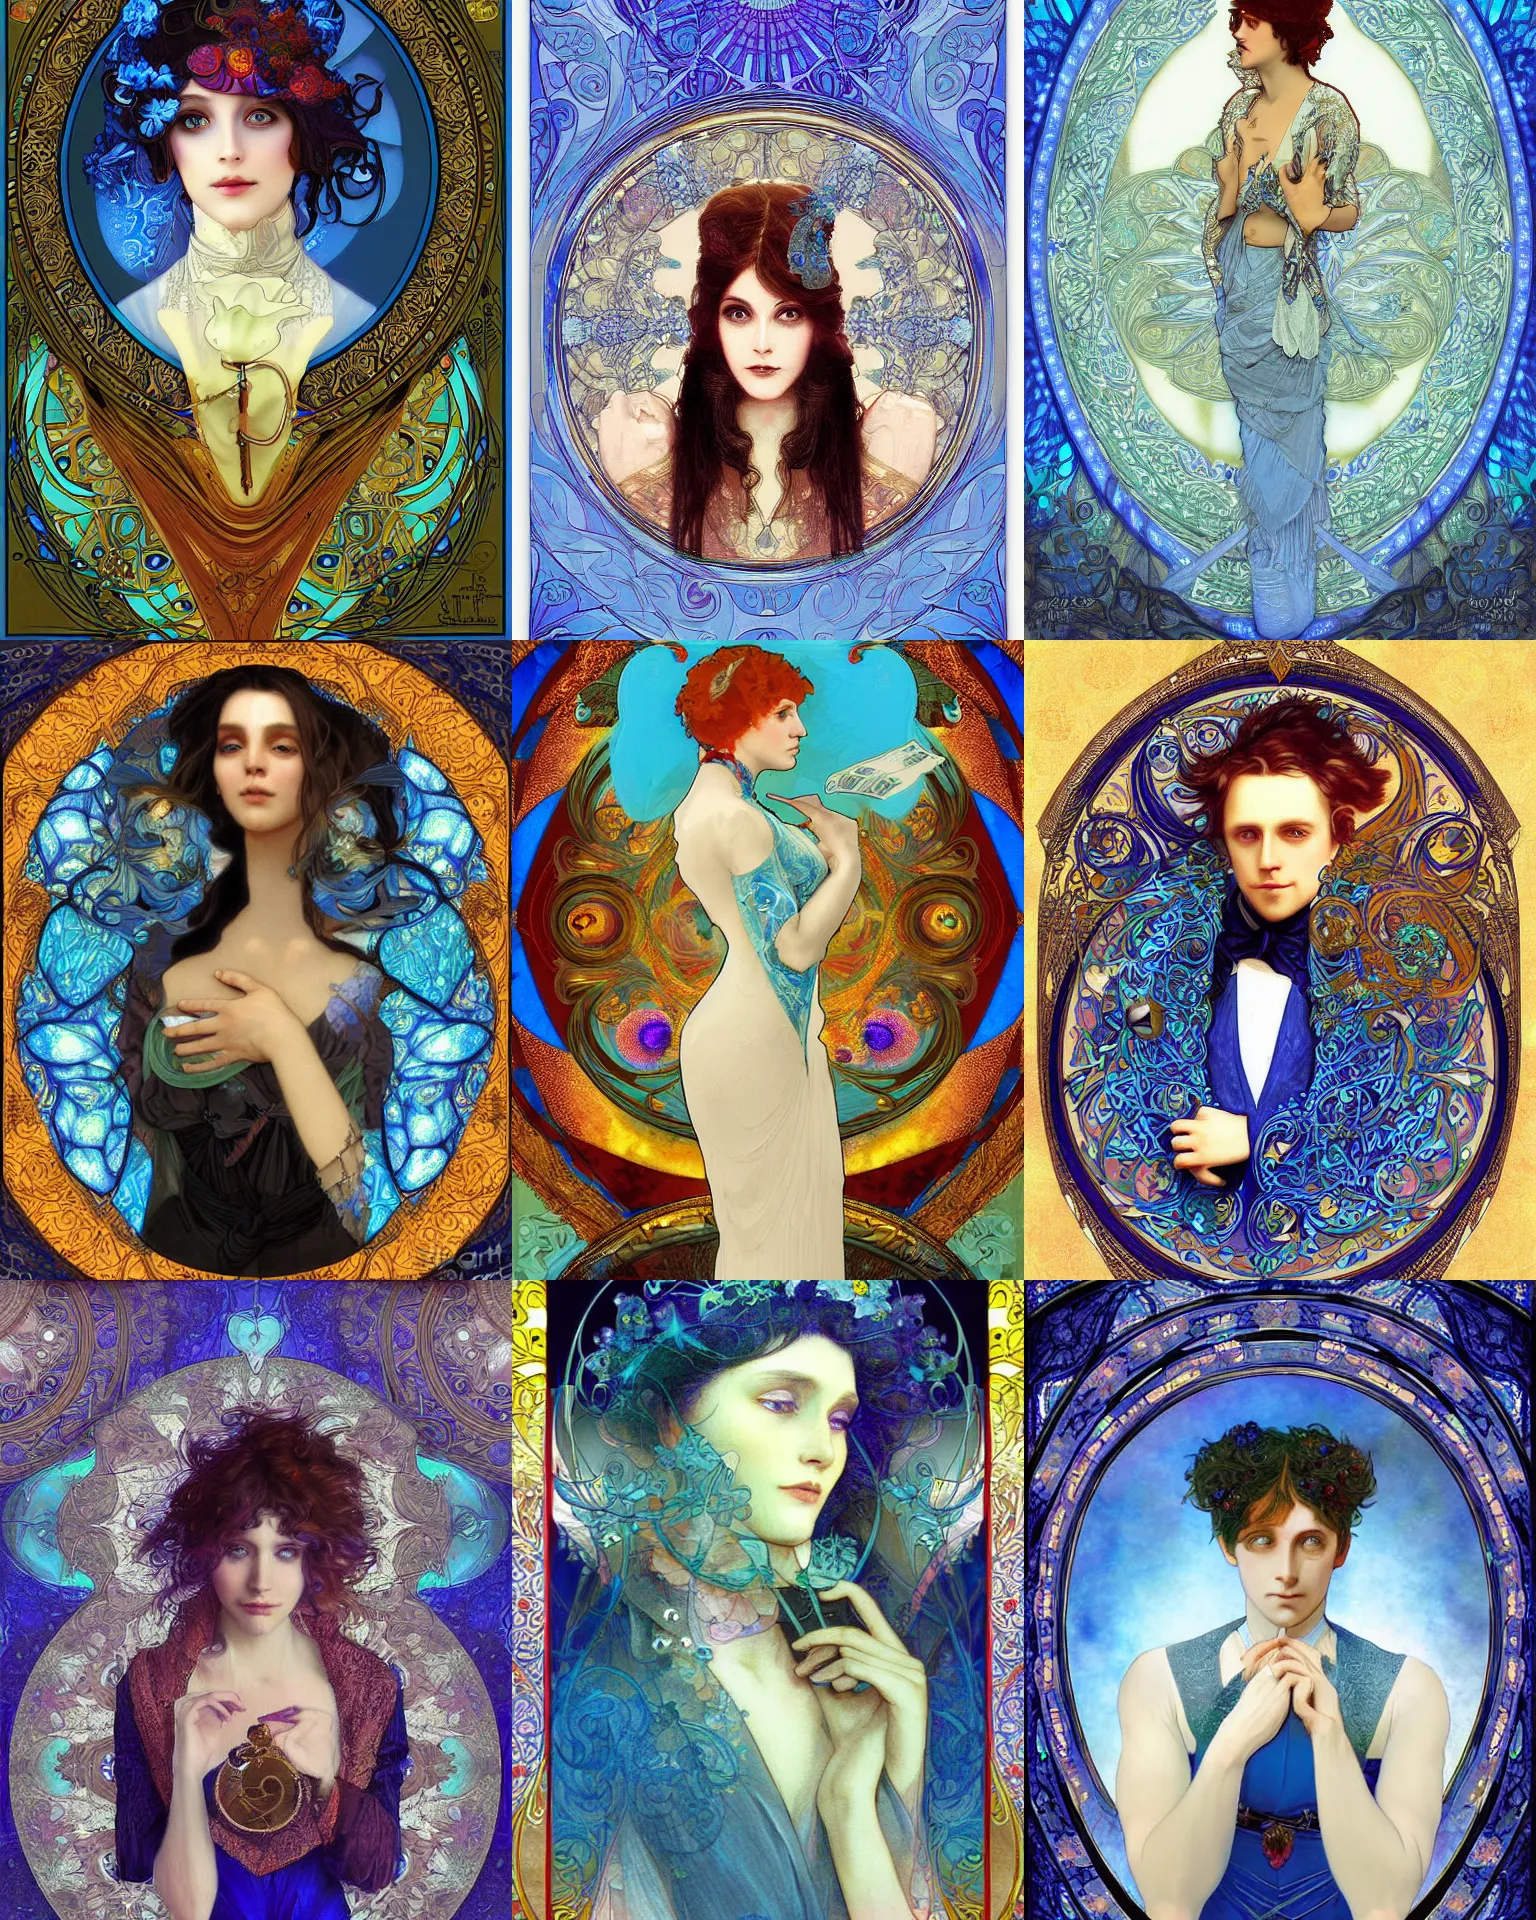 Prompt: portrait of a magician, blue - petals, digital art by alphonese mucha